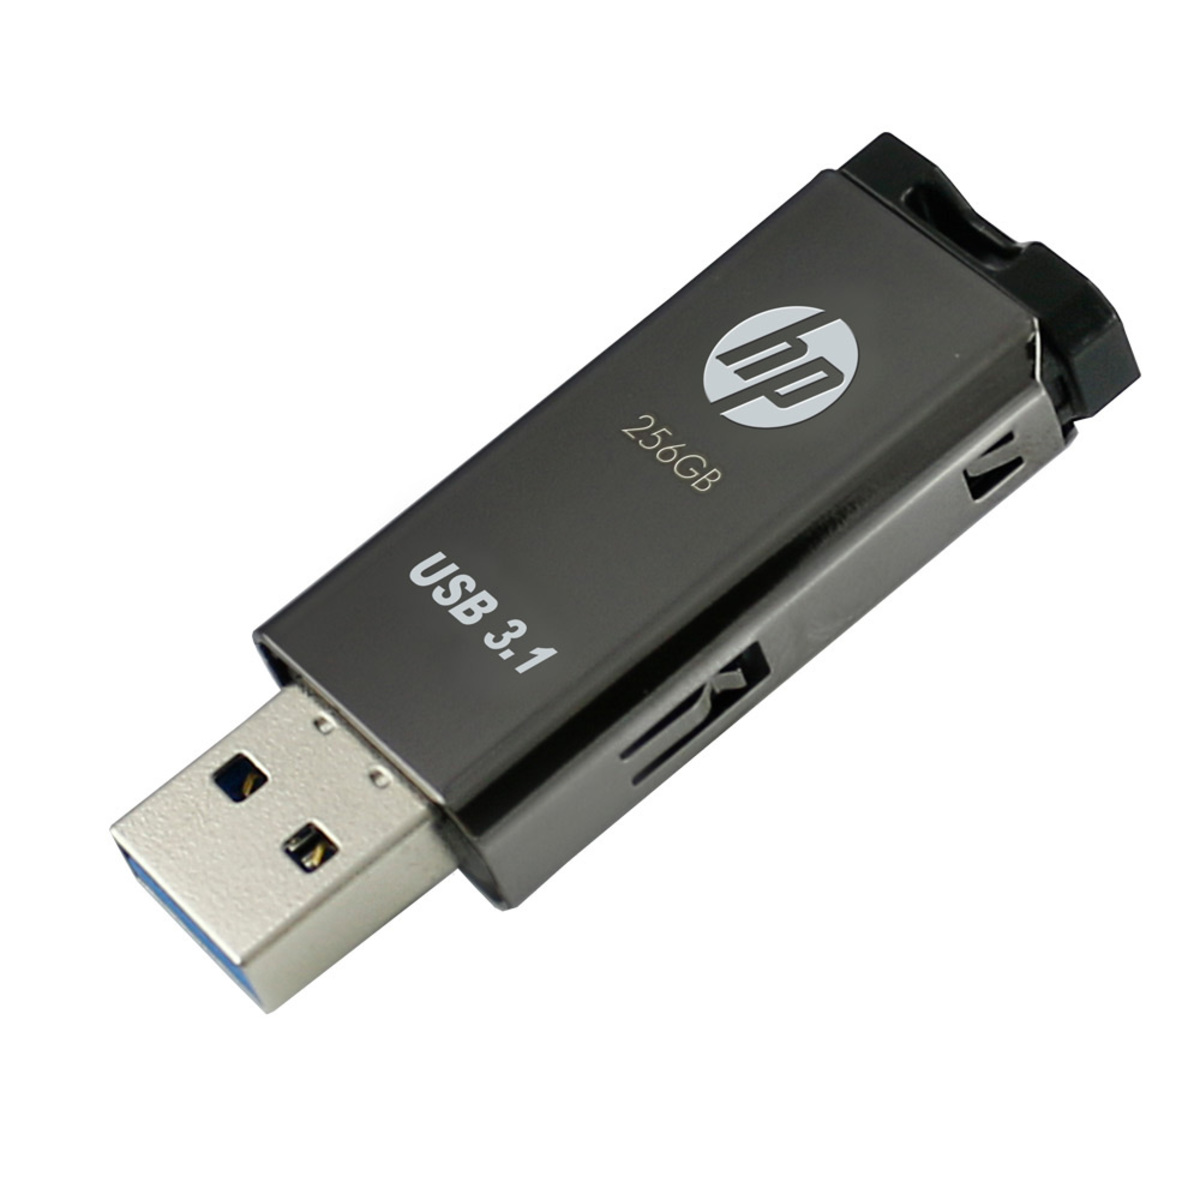 HP USB 3.1 Flash Drive HPFD770W 256GB